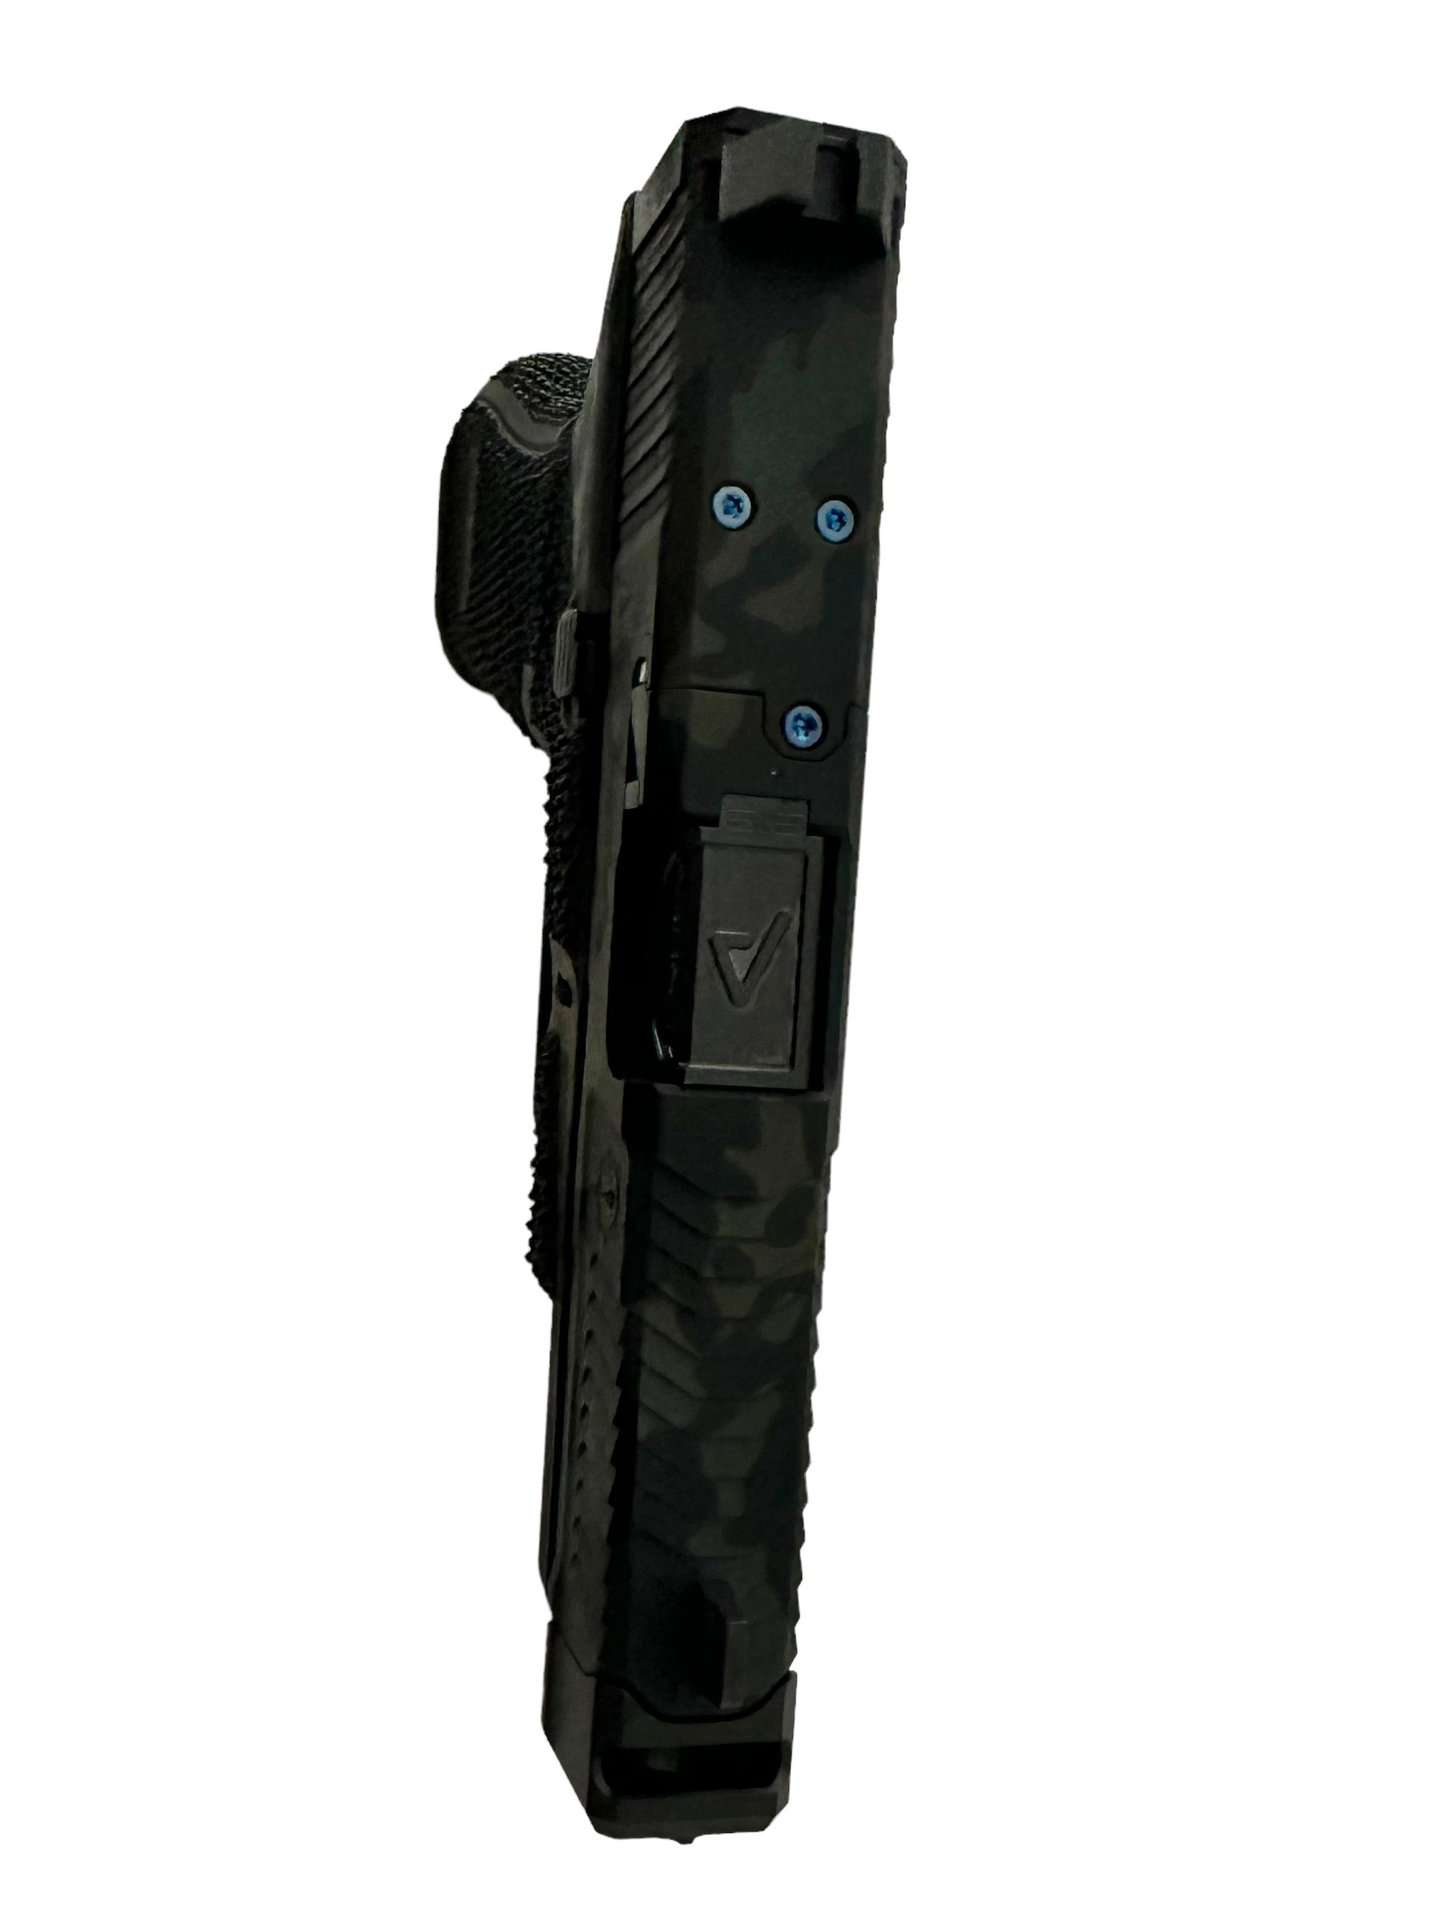 Agency Arms Sage Dynamics V2 Glock 45 Gen 5 Black Multicam 9mm